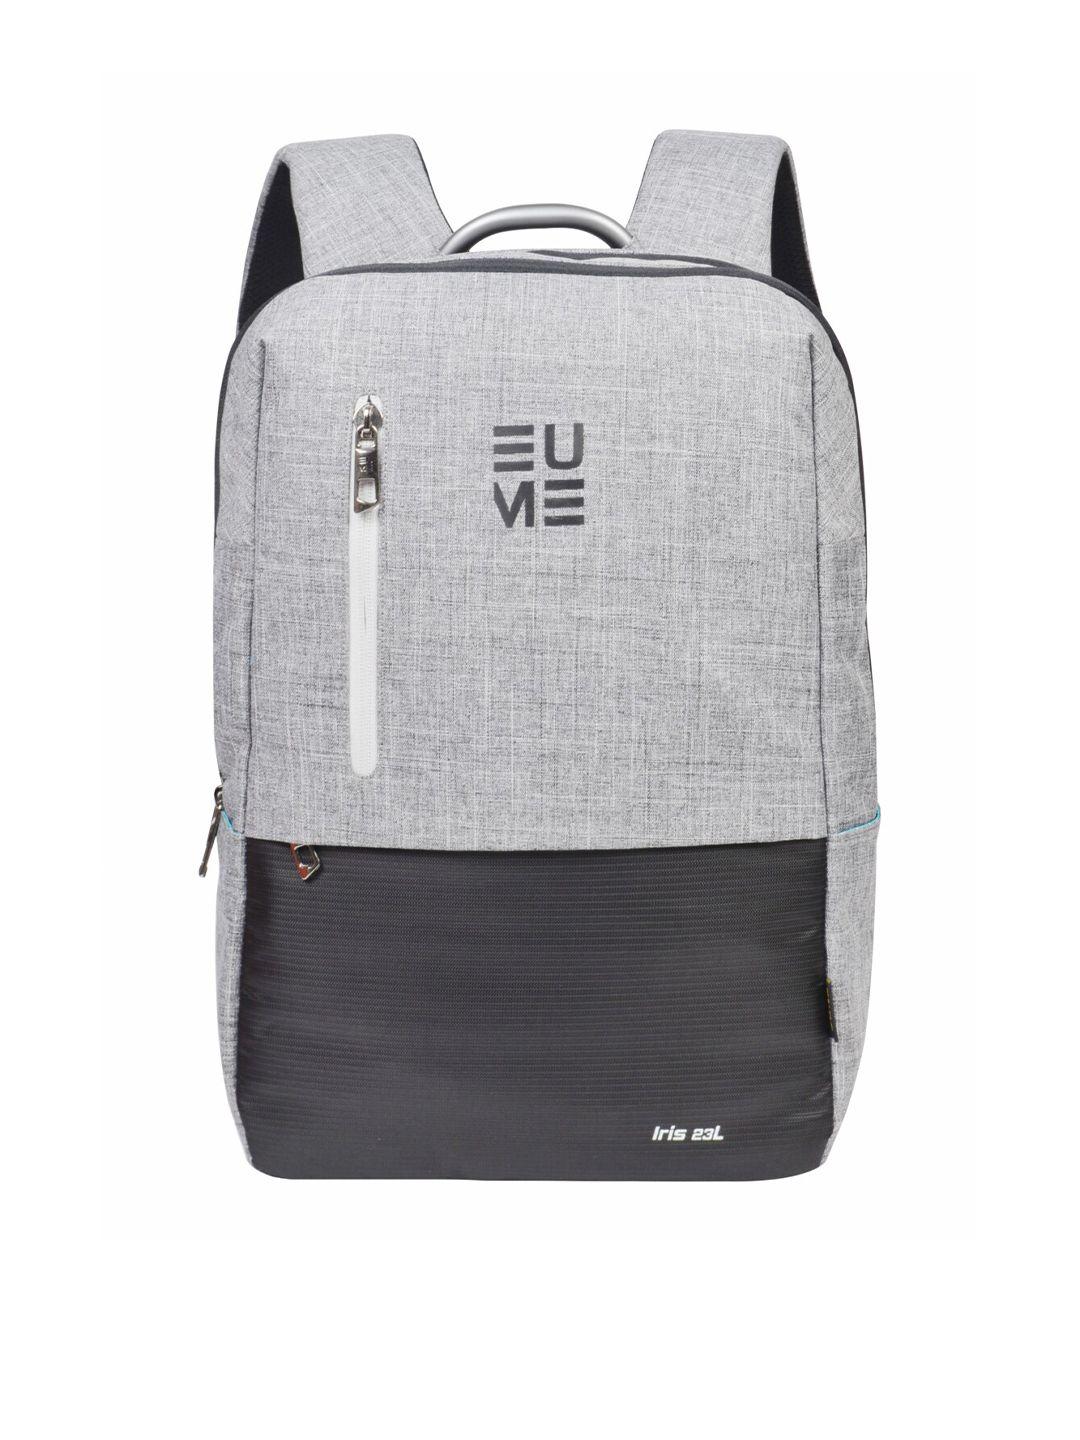 eume unisex grey & black colourblocked backpack